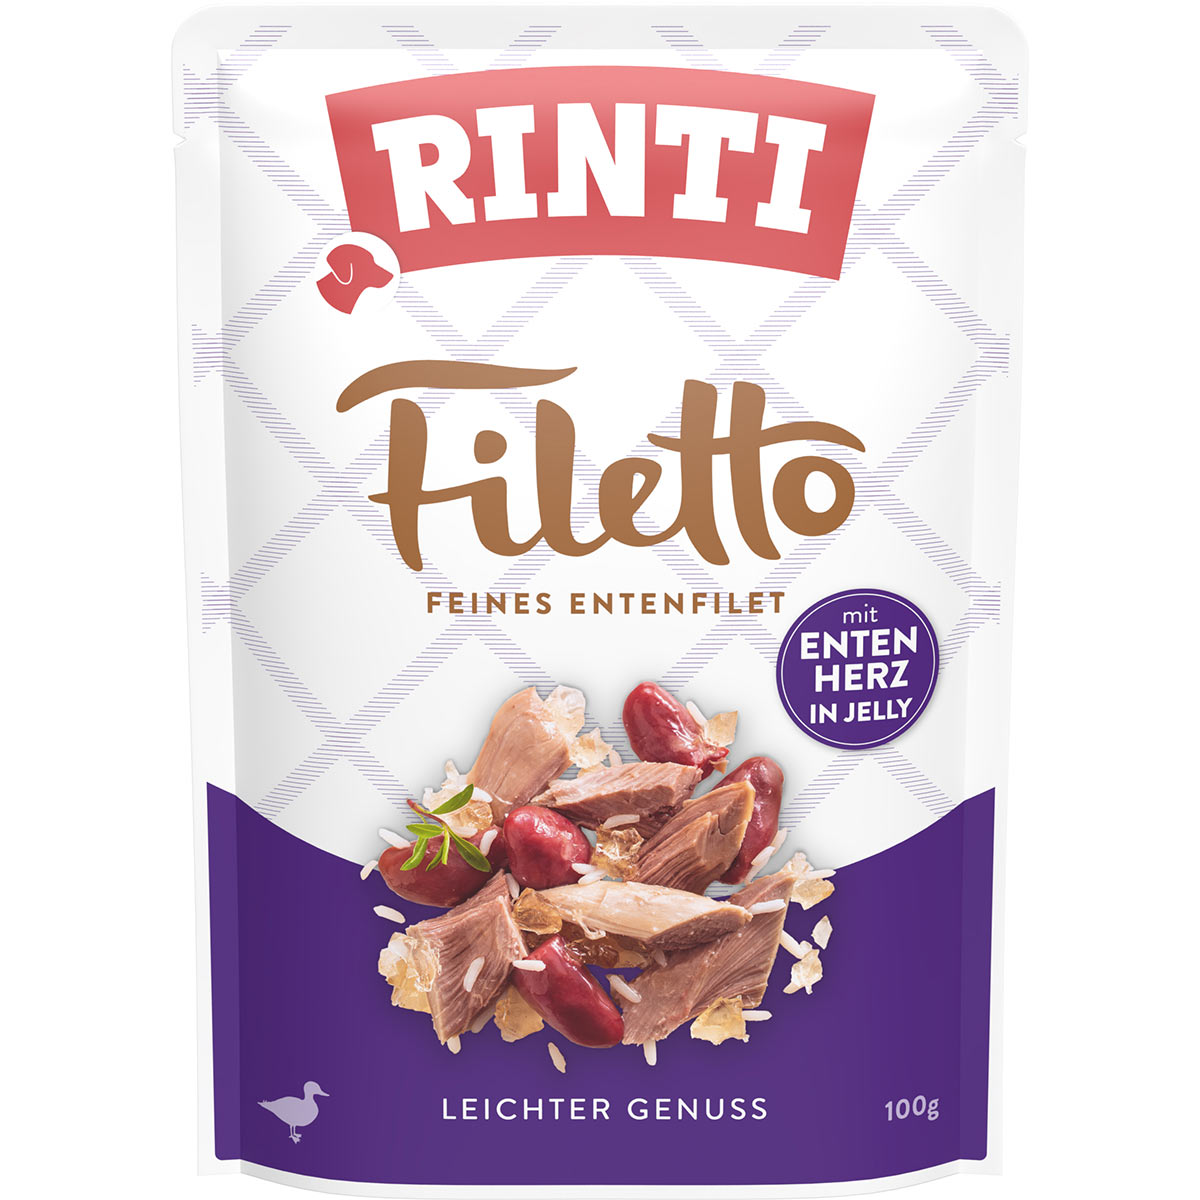 RINTI Filetto Entenfilet mit Entenherz 24x100g